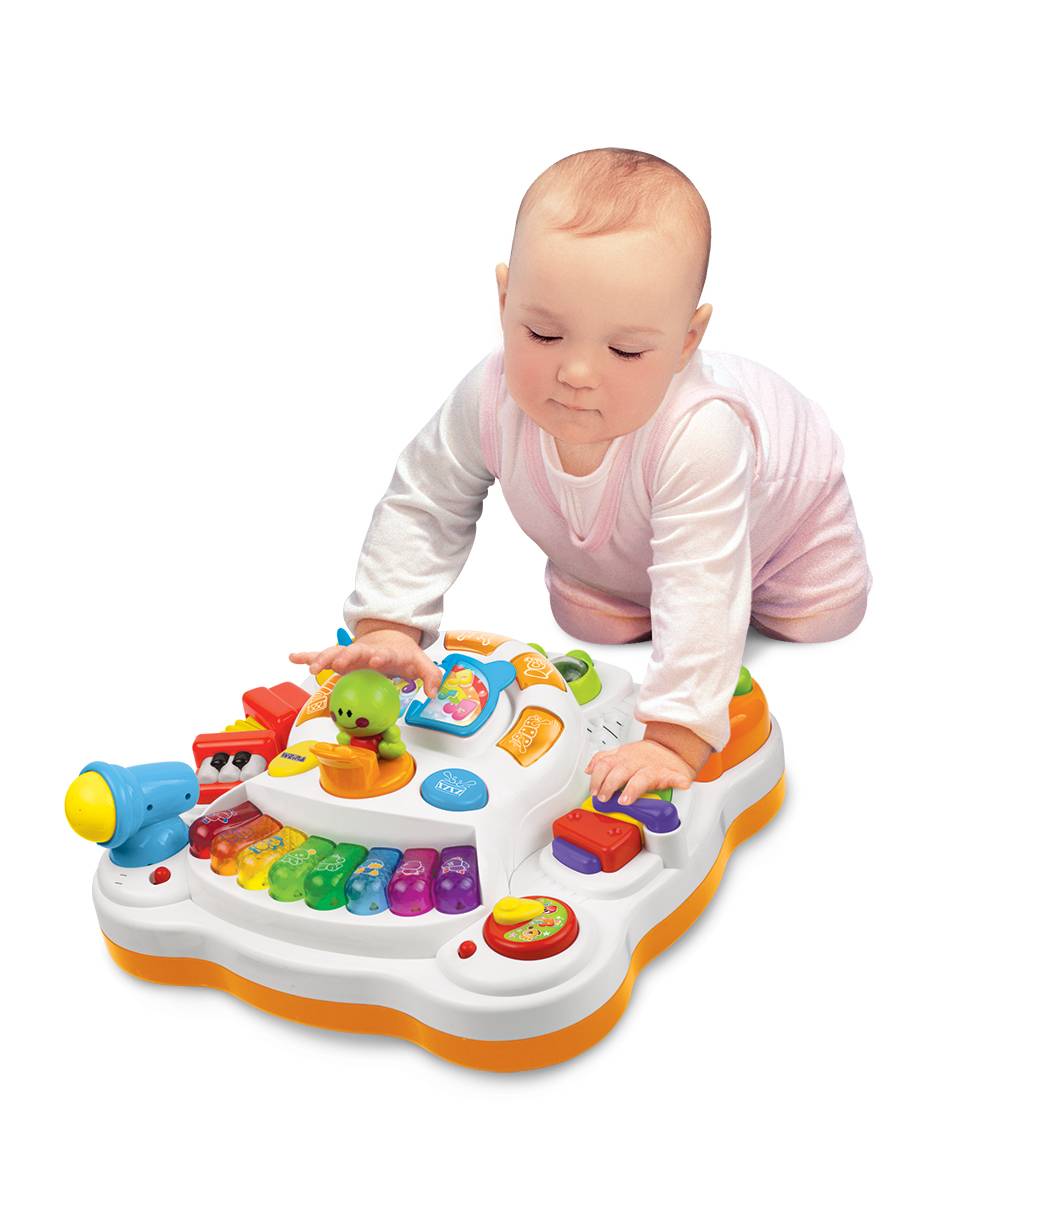 Подарок на 6 месяцев. Развивающий столик Weina. Музыкальный столик Weina. Музыкальная игрушка Weina. Развивающие игрушки для 2 лет.